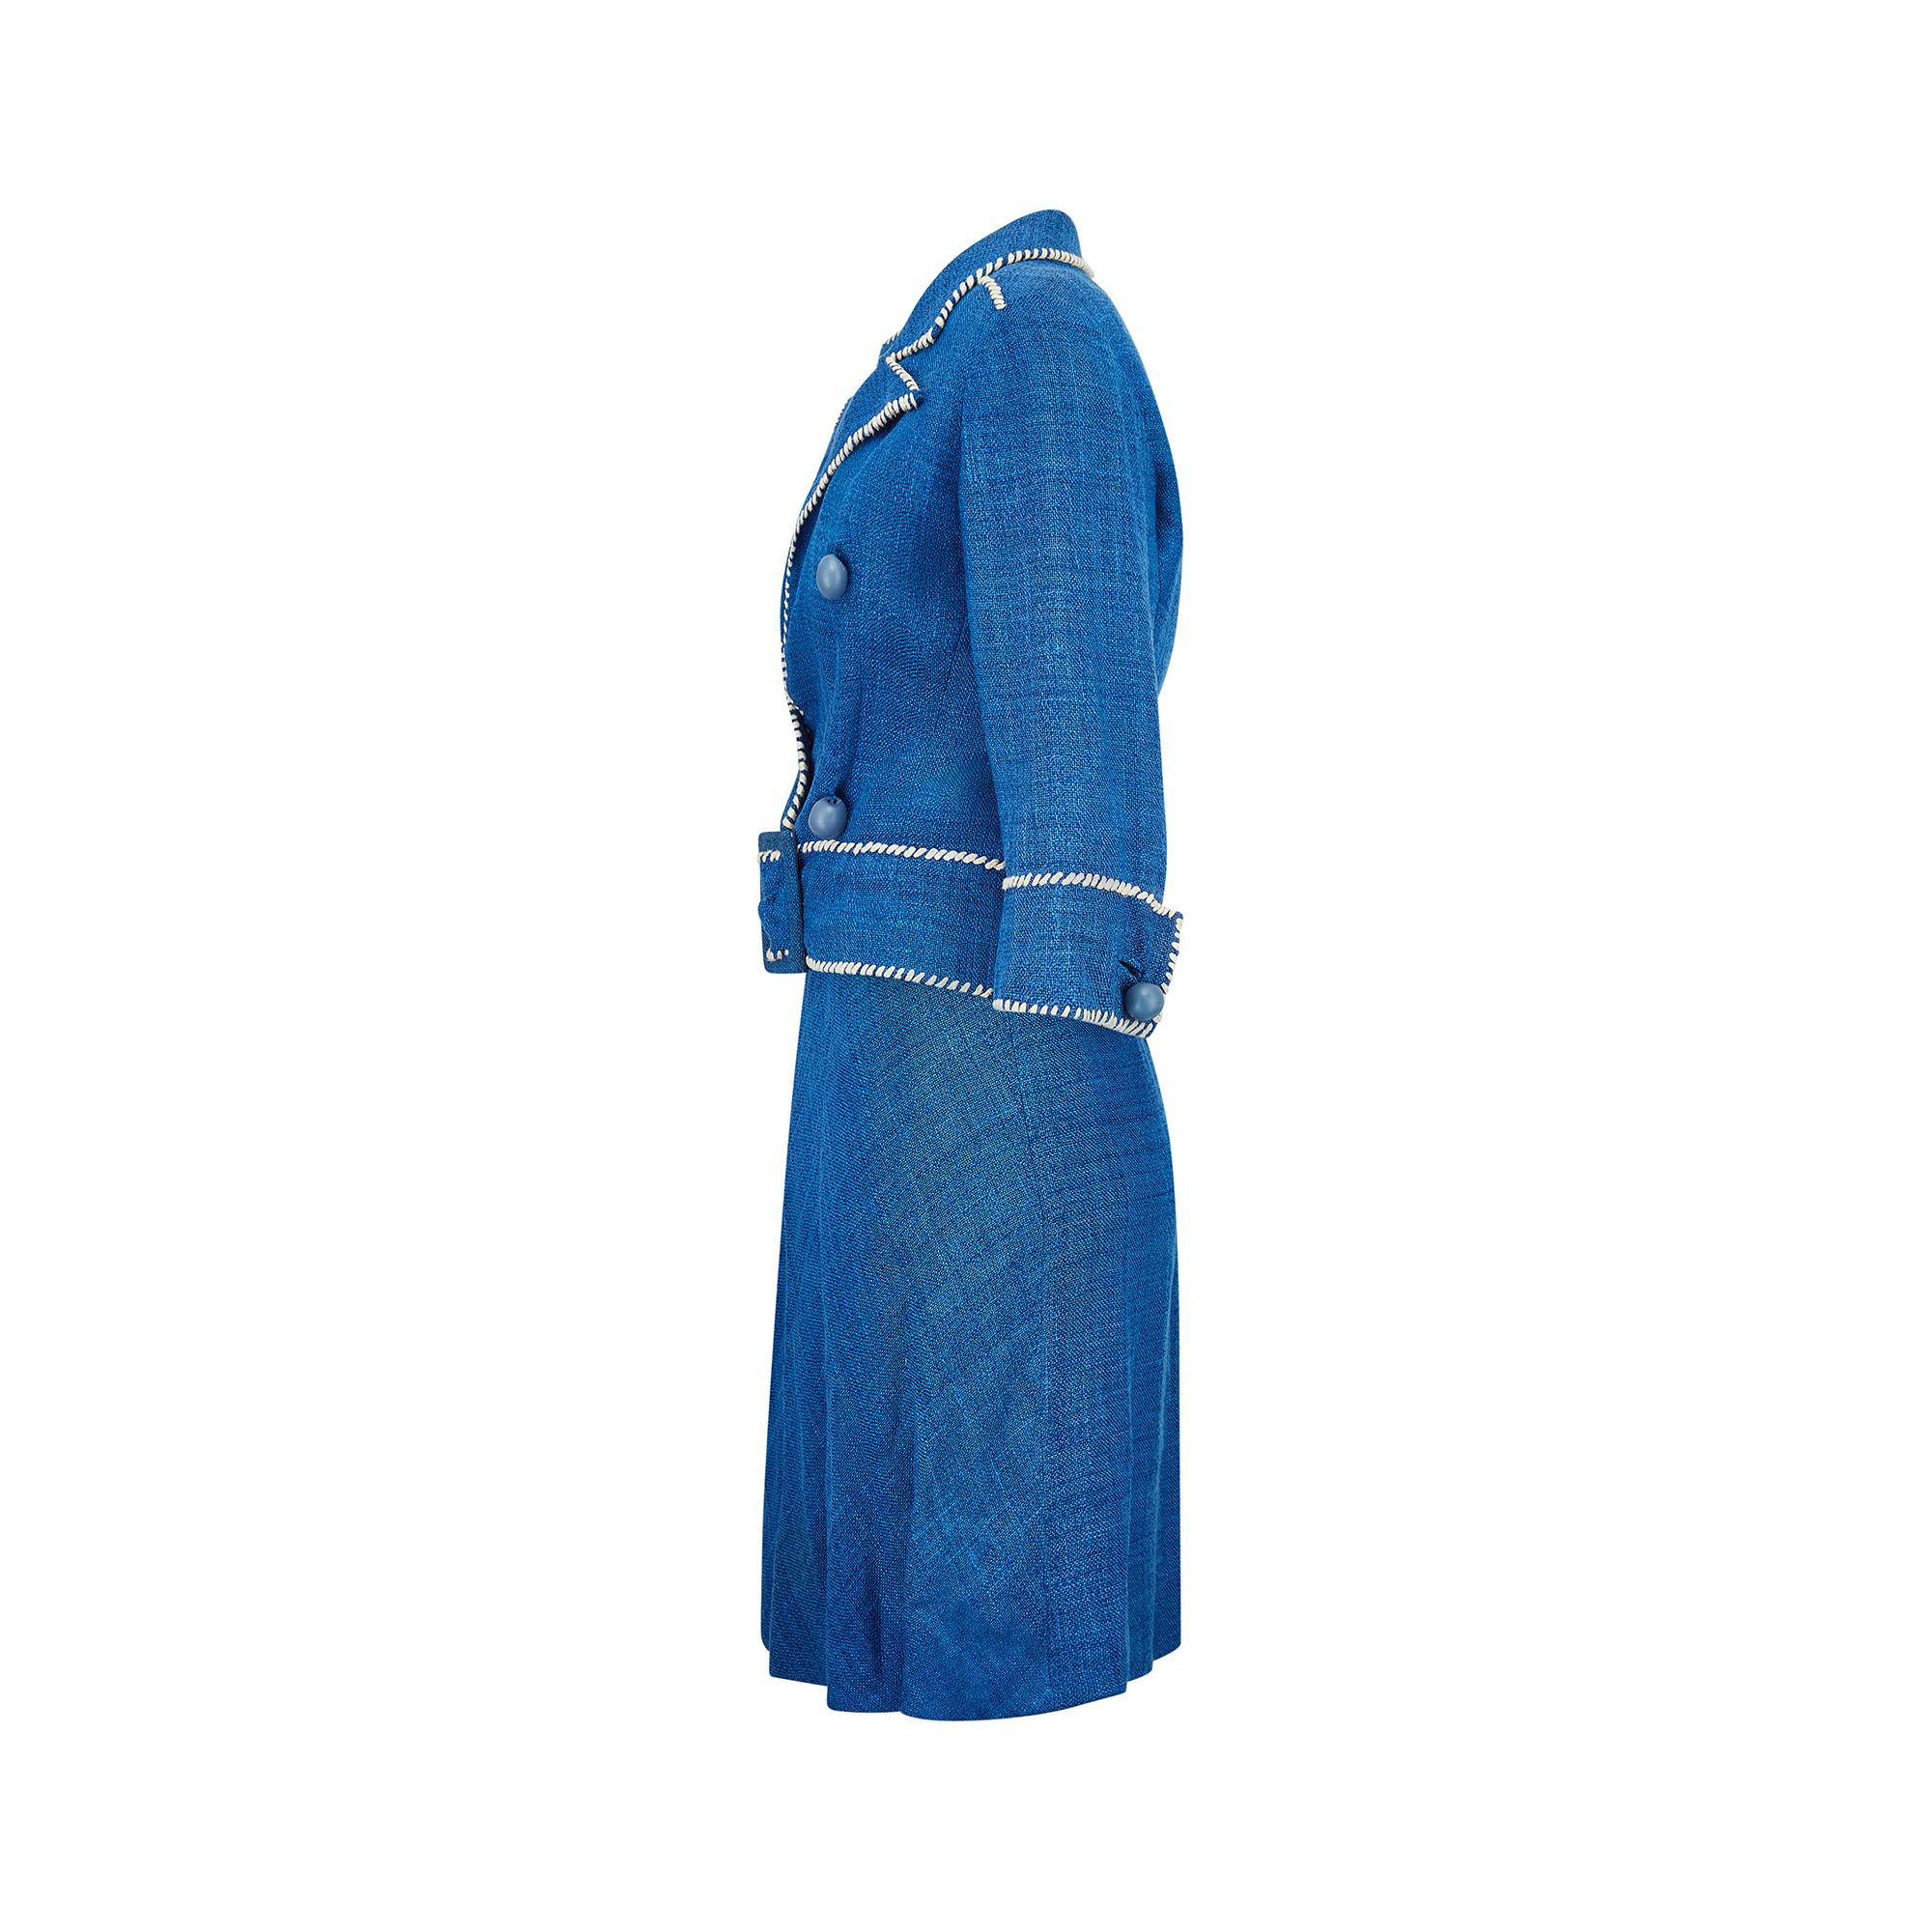 1950s Jacques Esterel Haute Couture Blue Linen Dress Suit In Excellent Condition For Sale In London, GB